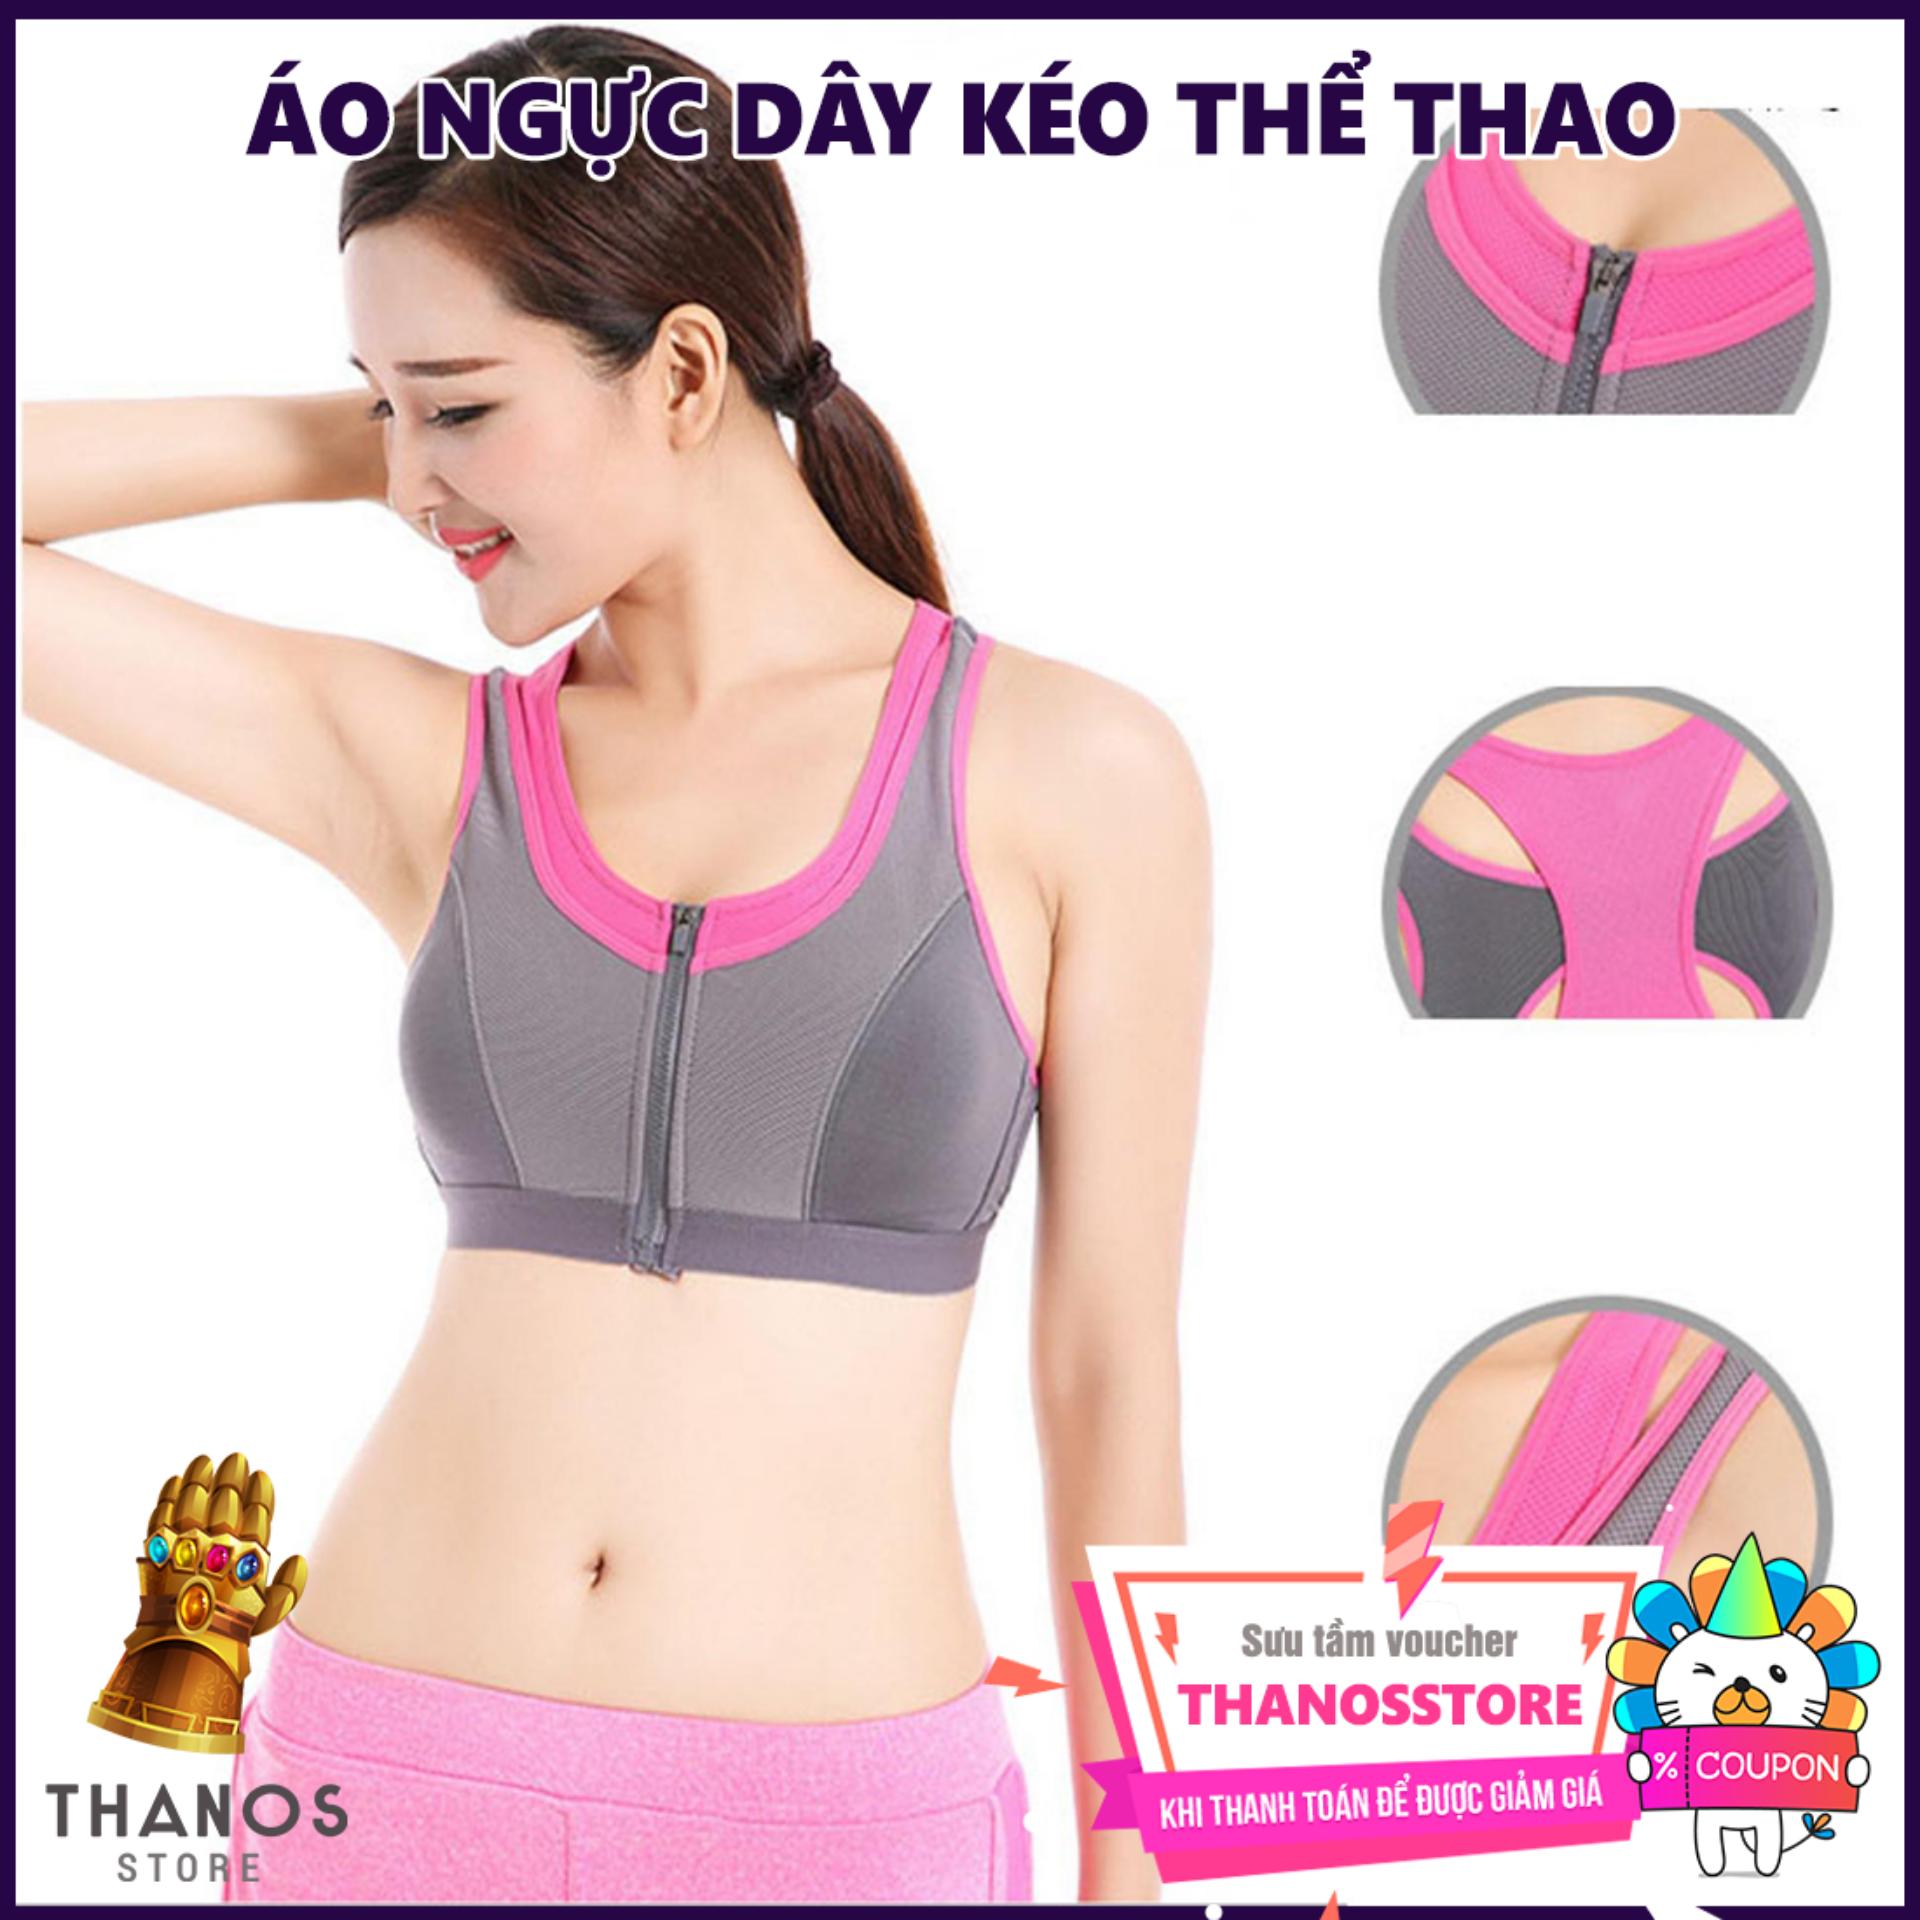 Áo ngực dây kéo thể thao - Thanos Store